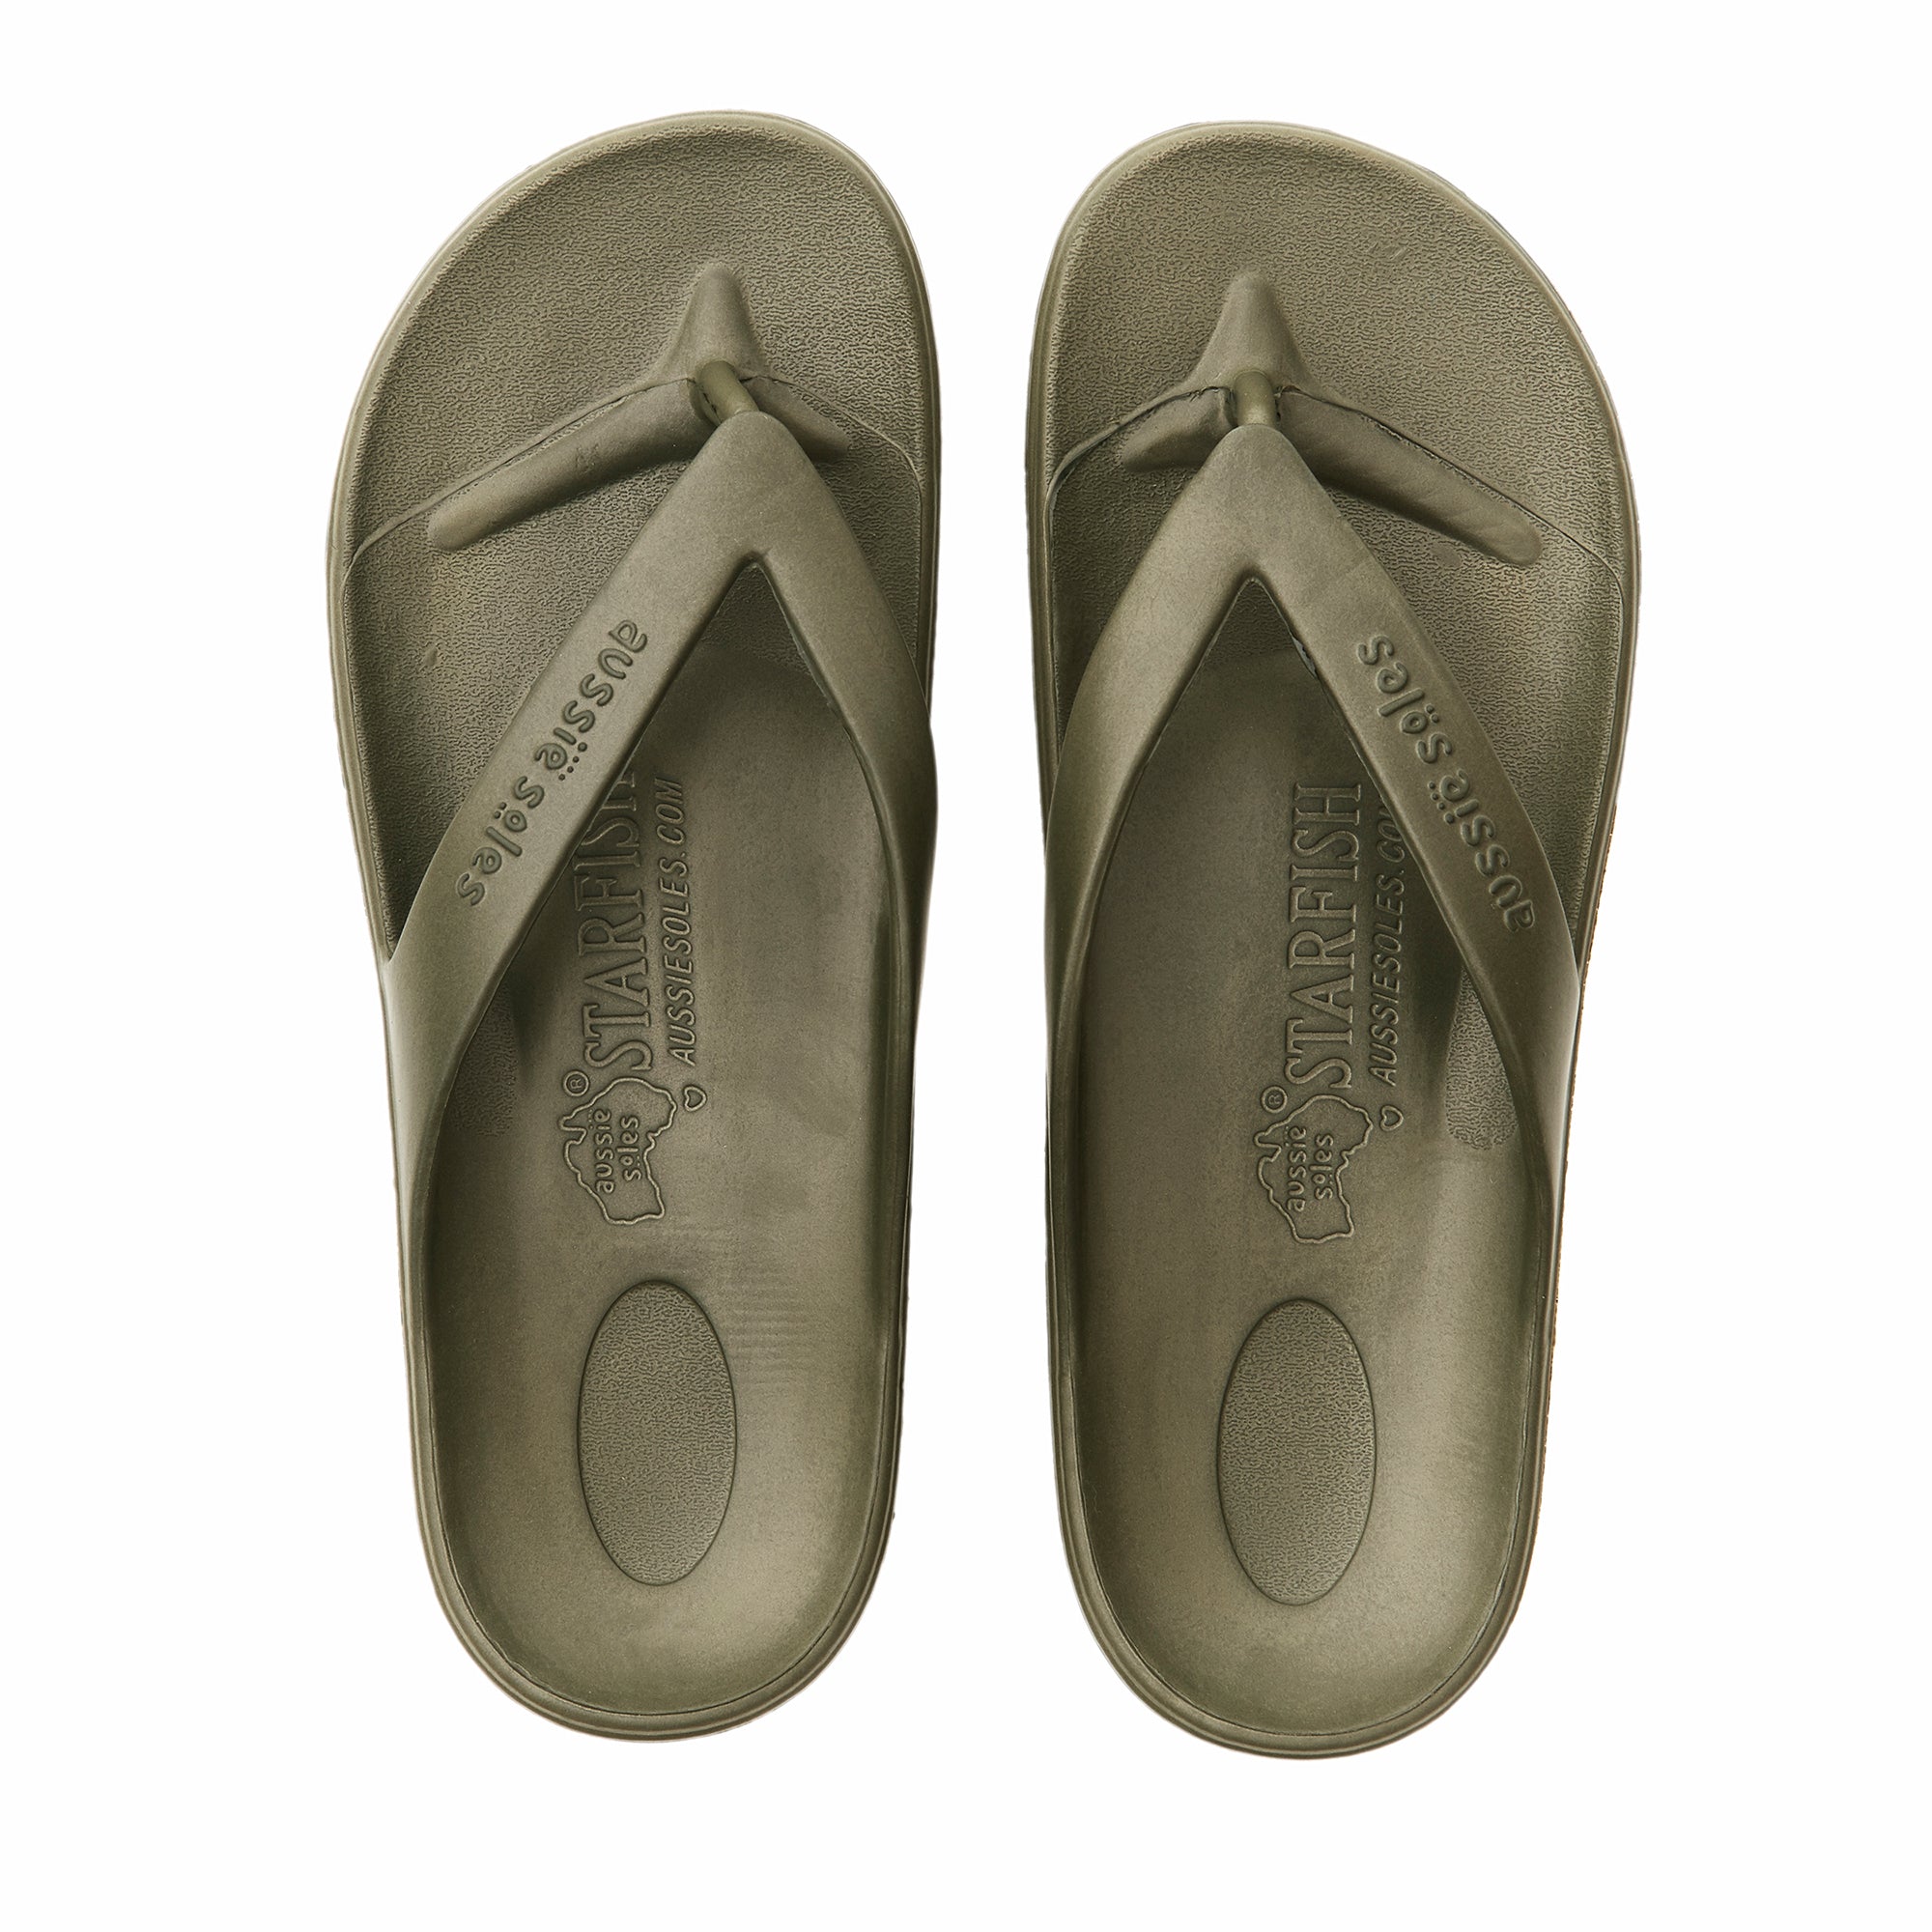 Aussie Soles Starfish Orthotic Sandals 